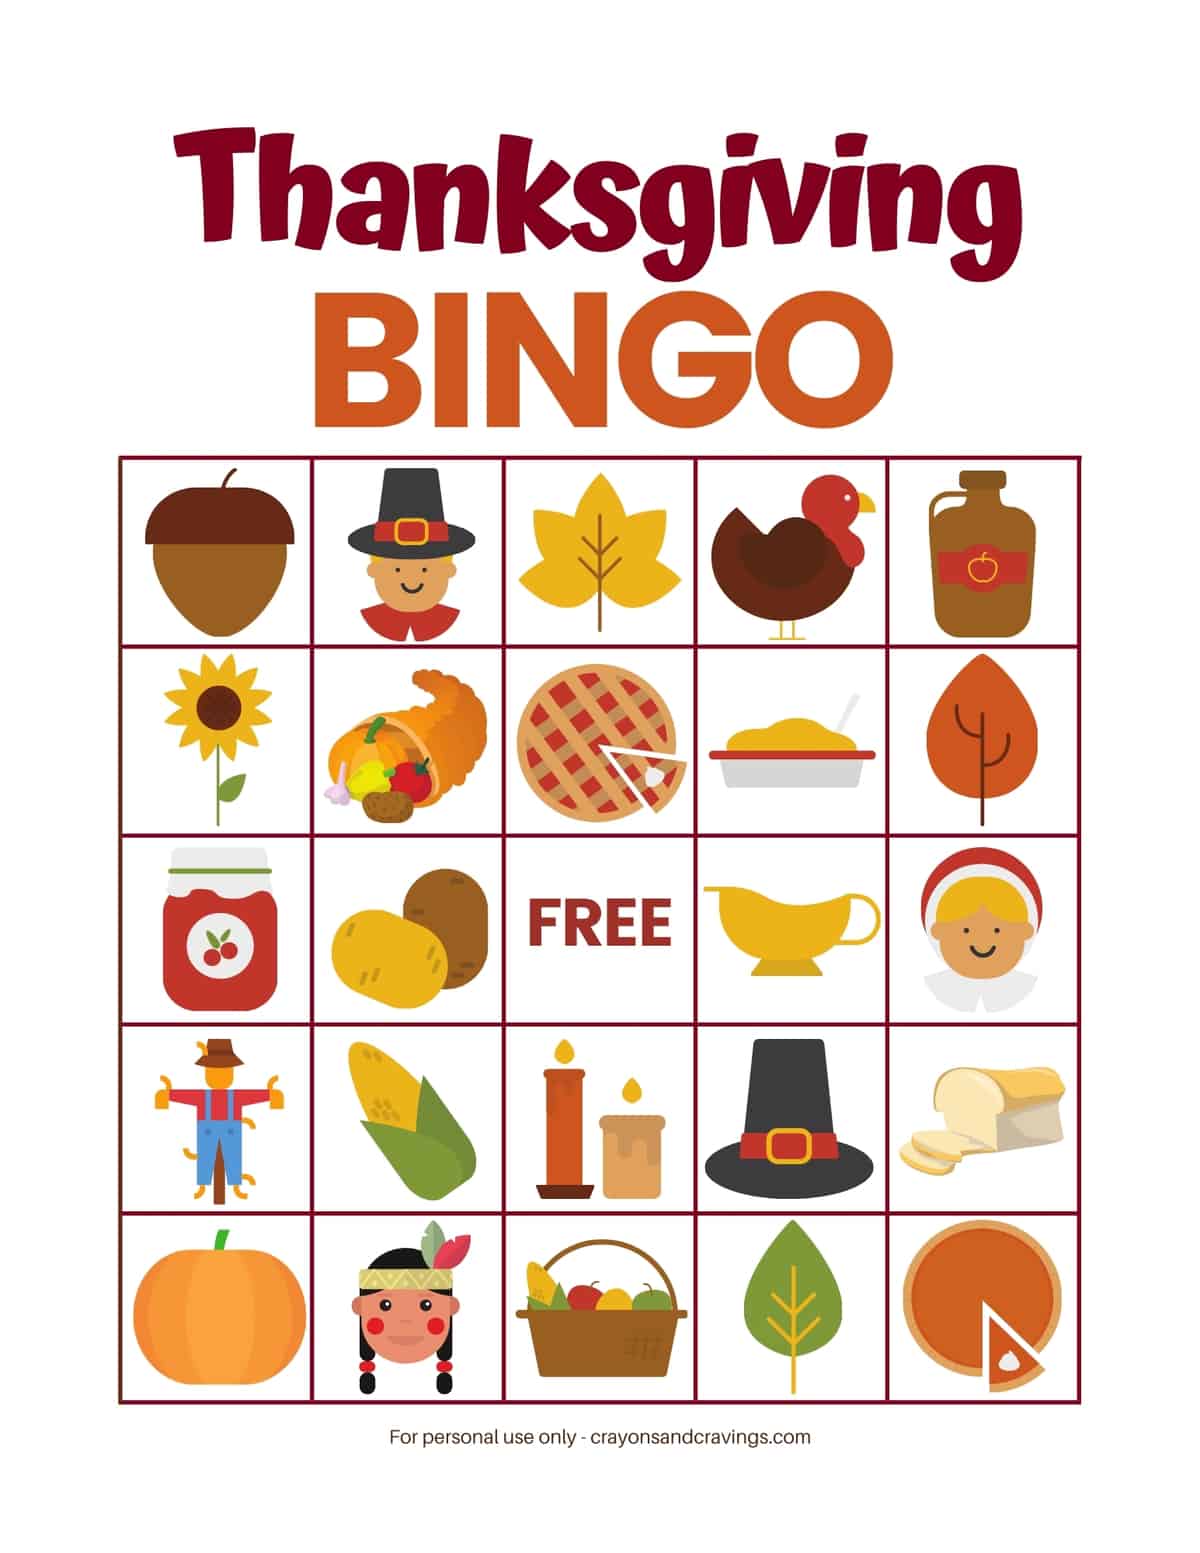 Thanksgiving Bingo Game (FREE Printable!) - Thanksgiving Bingo Card Game Printable